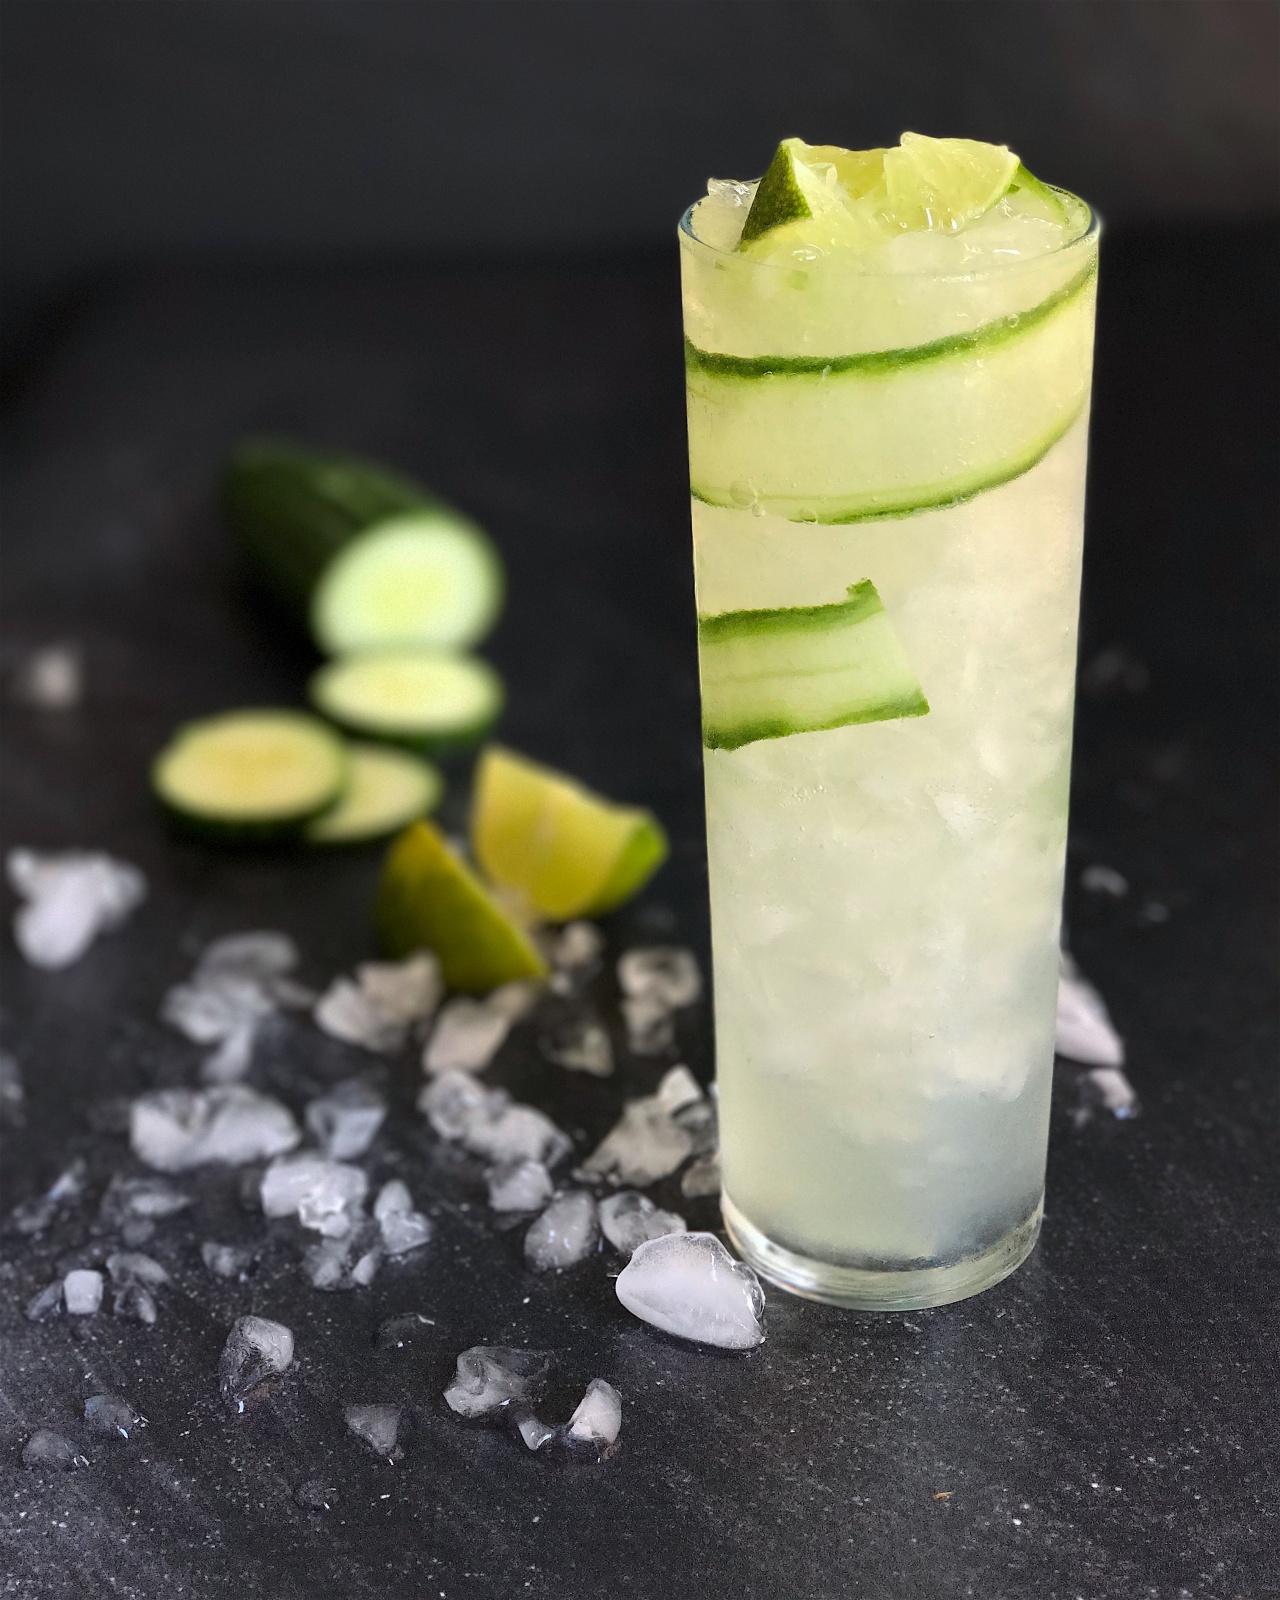 Hendrick's gin tonic cucumber recipe